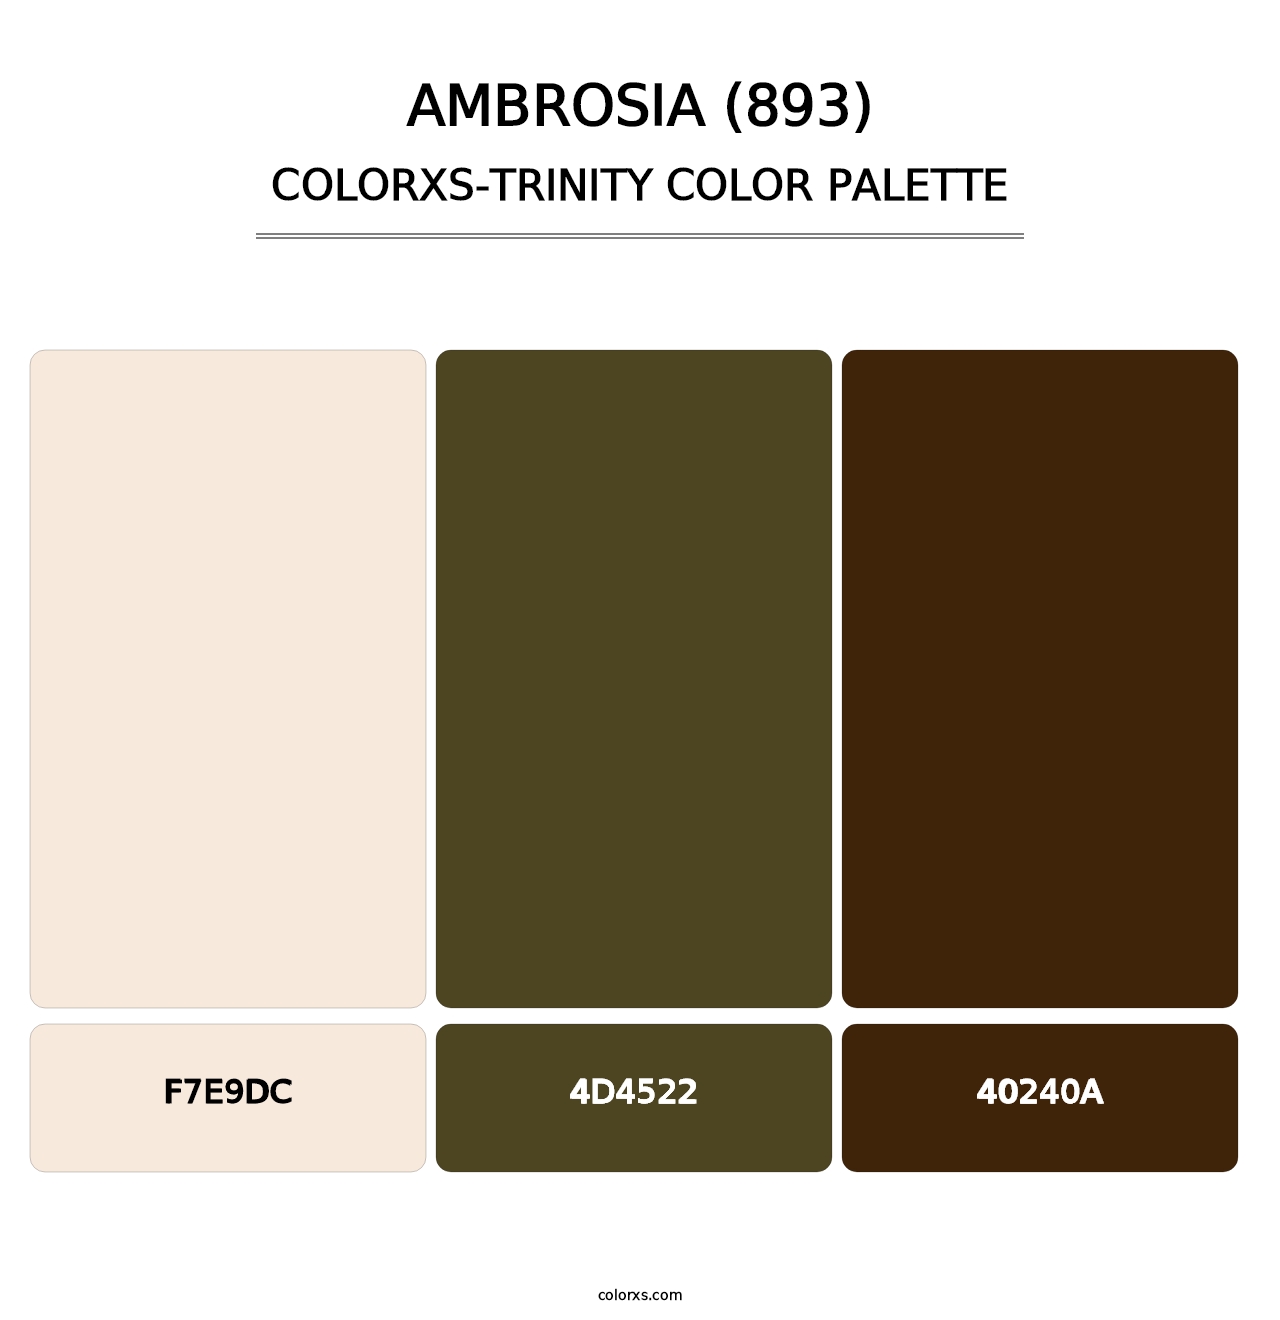 Ambrosia (893) - Colorxs Trinity Palette